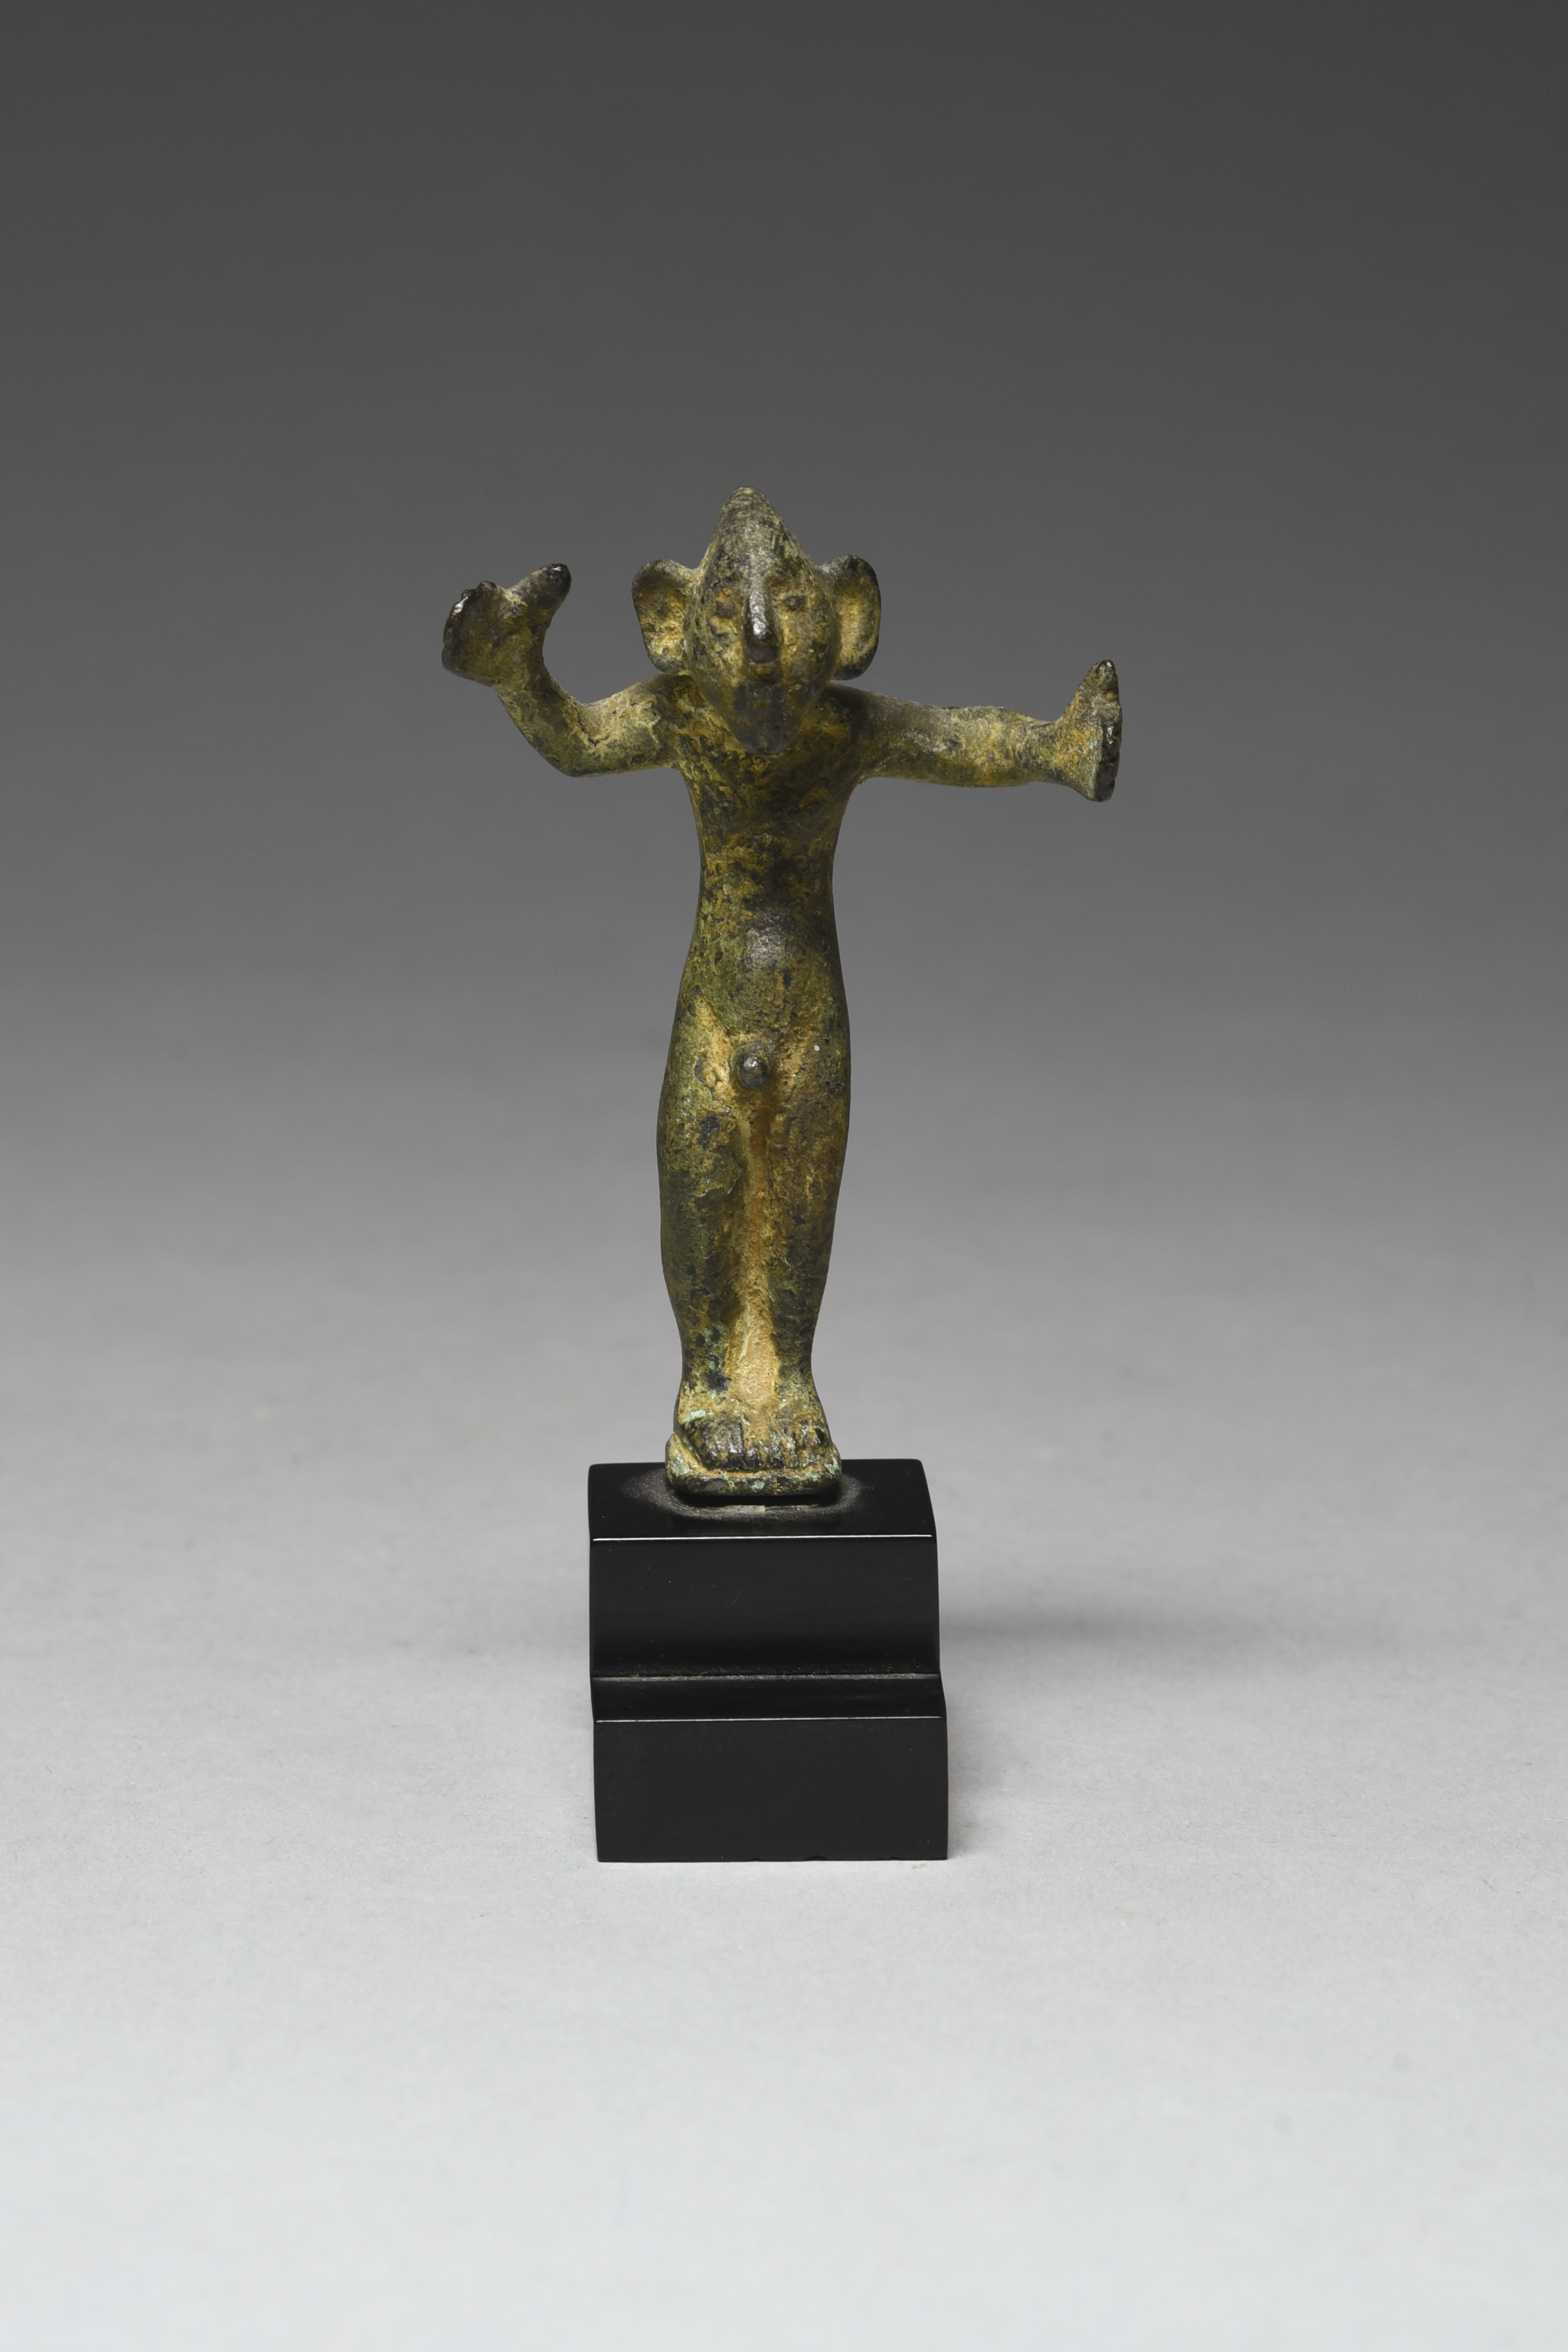 An Etruscan bronze figure